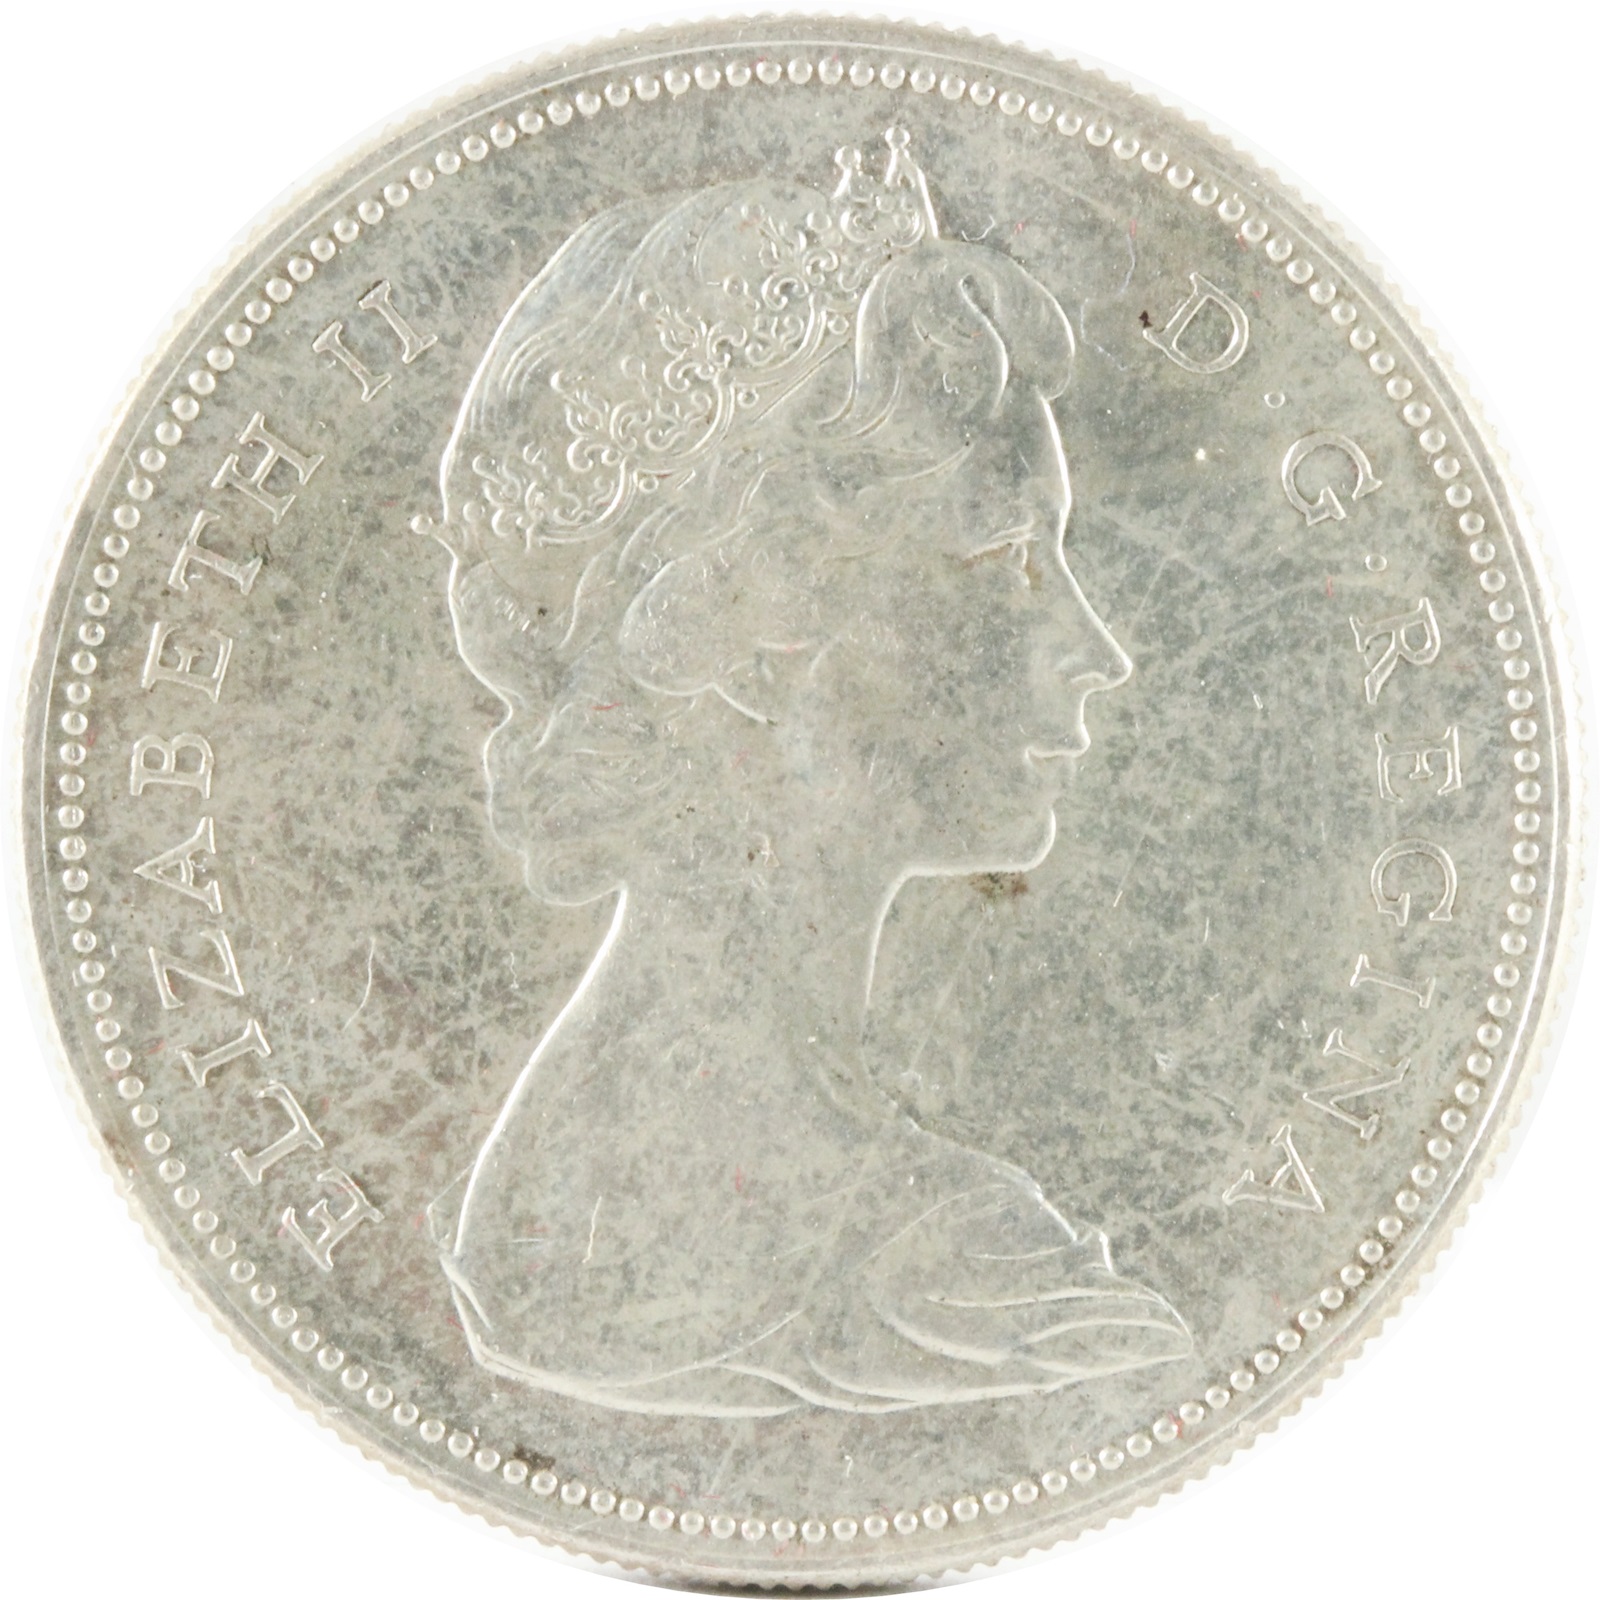 カナダ 1DOLLAR 銀貨 1967年 エリザベス2世 XF | ミスターコインズ